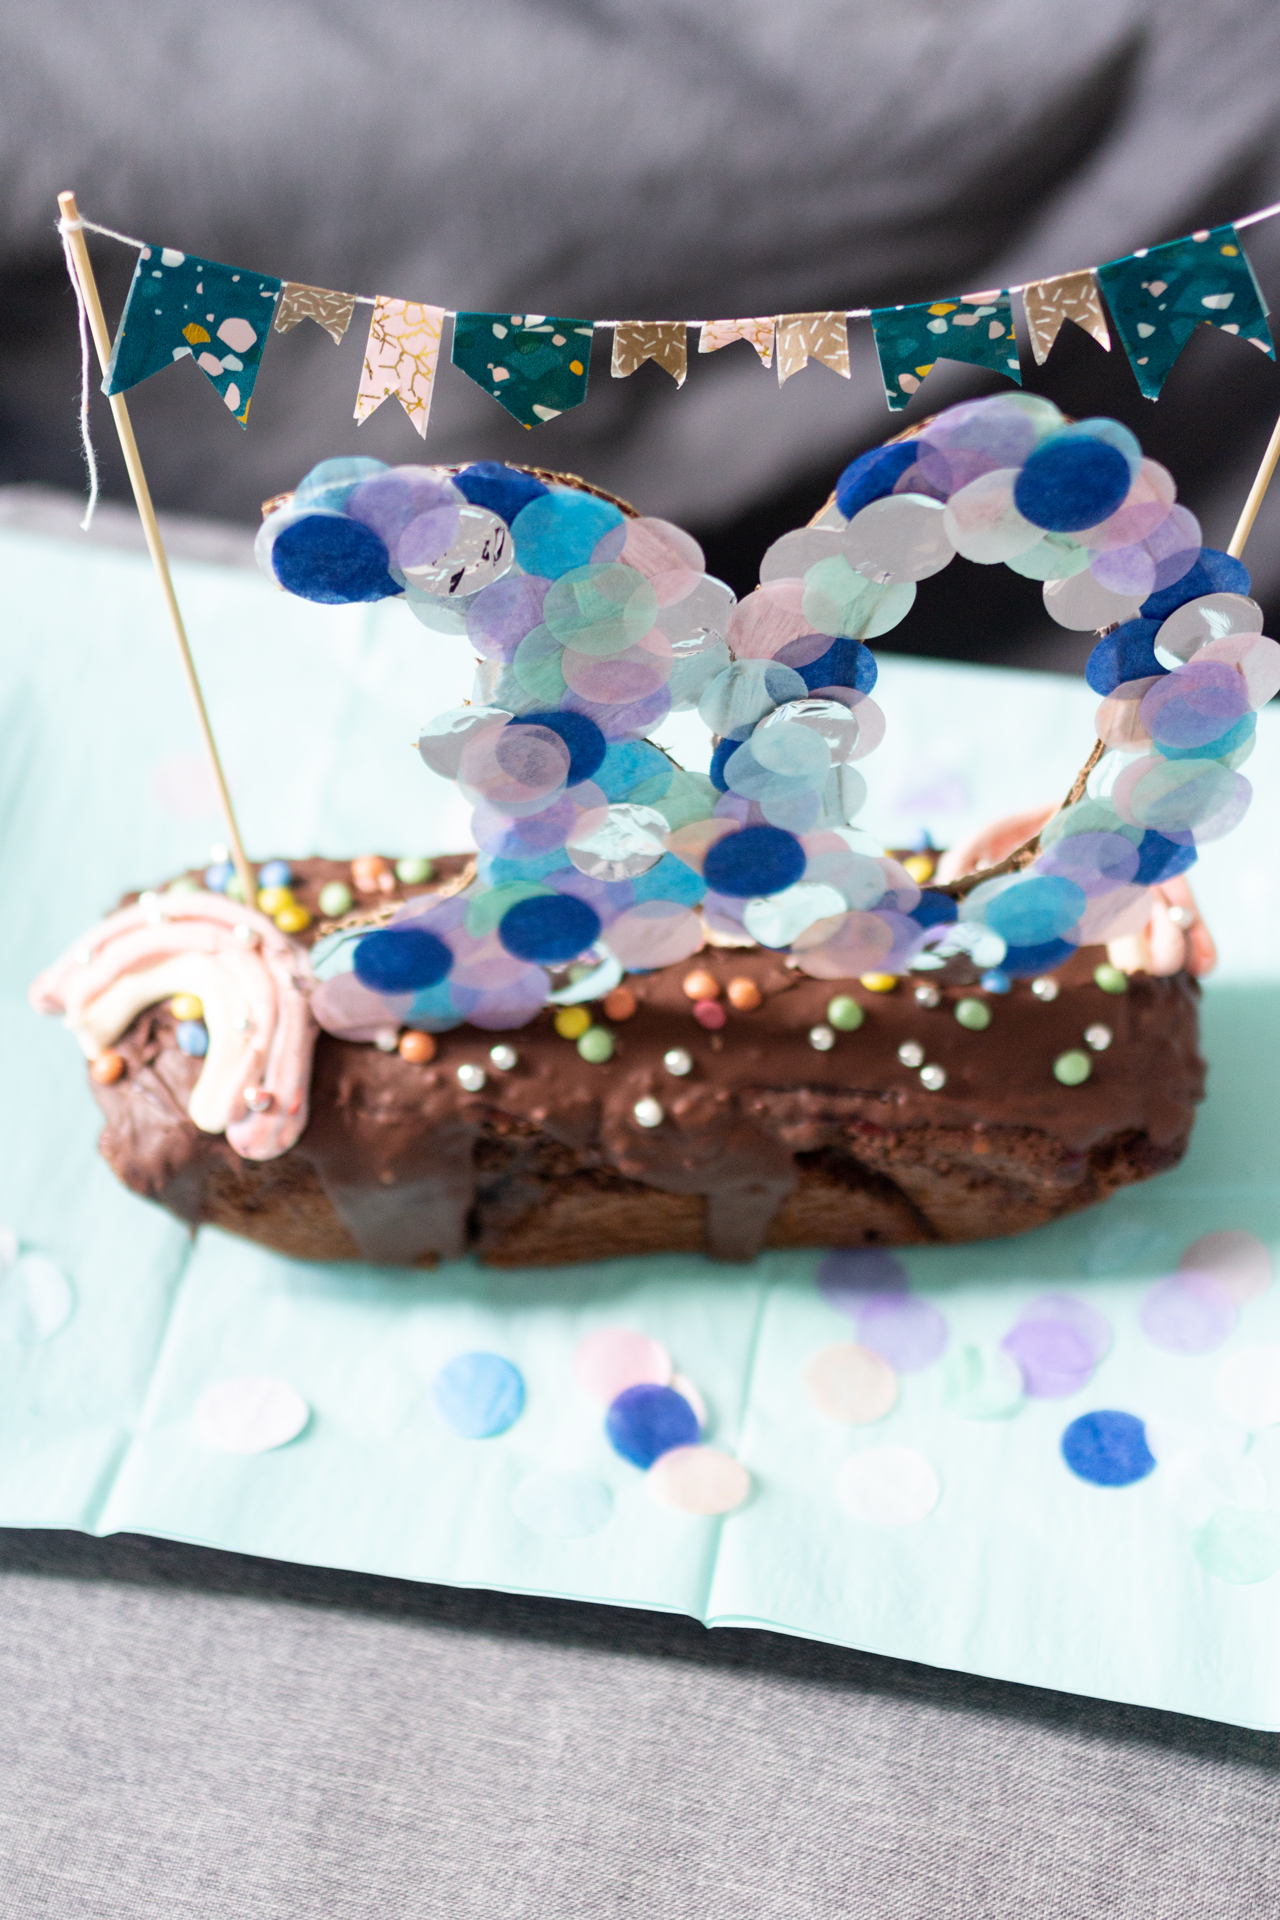 DIY Birthday Cake Topper mit Konfetti - für einen besonderen Geburtstagskuchen!